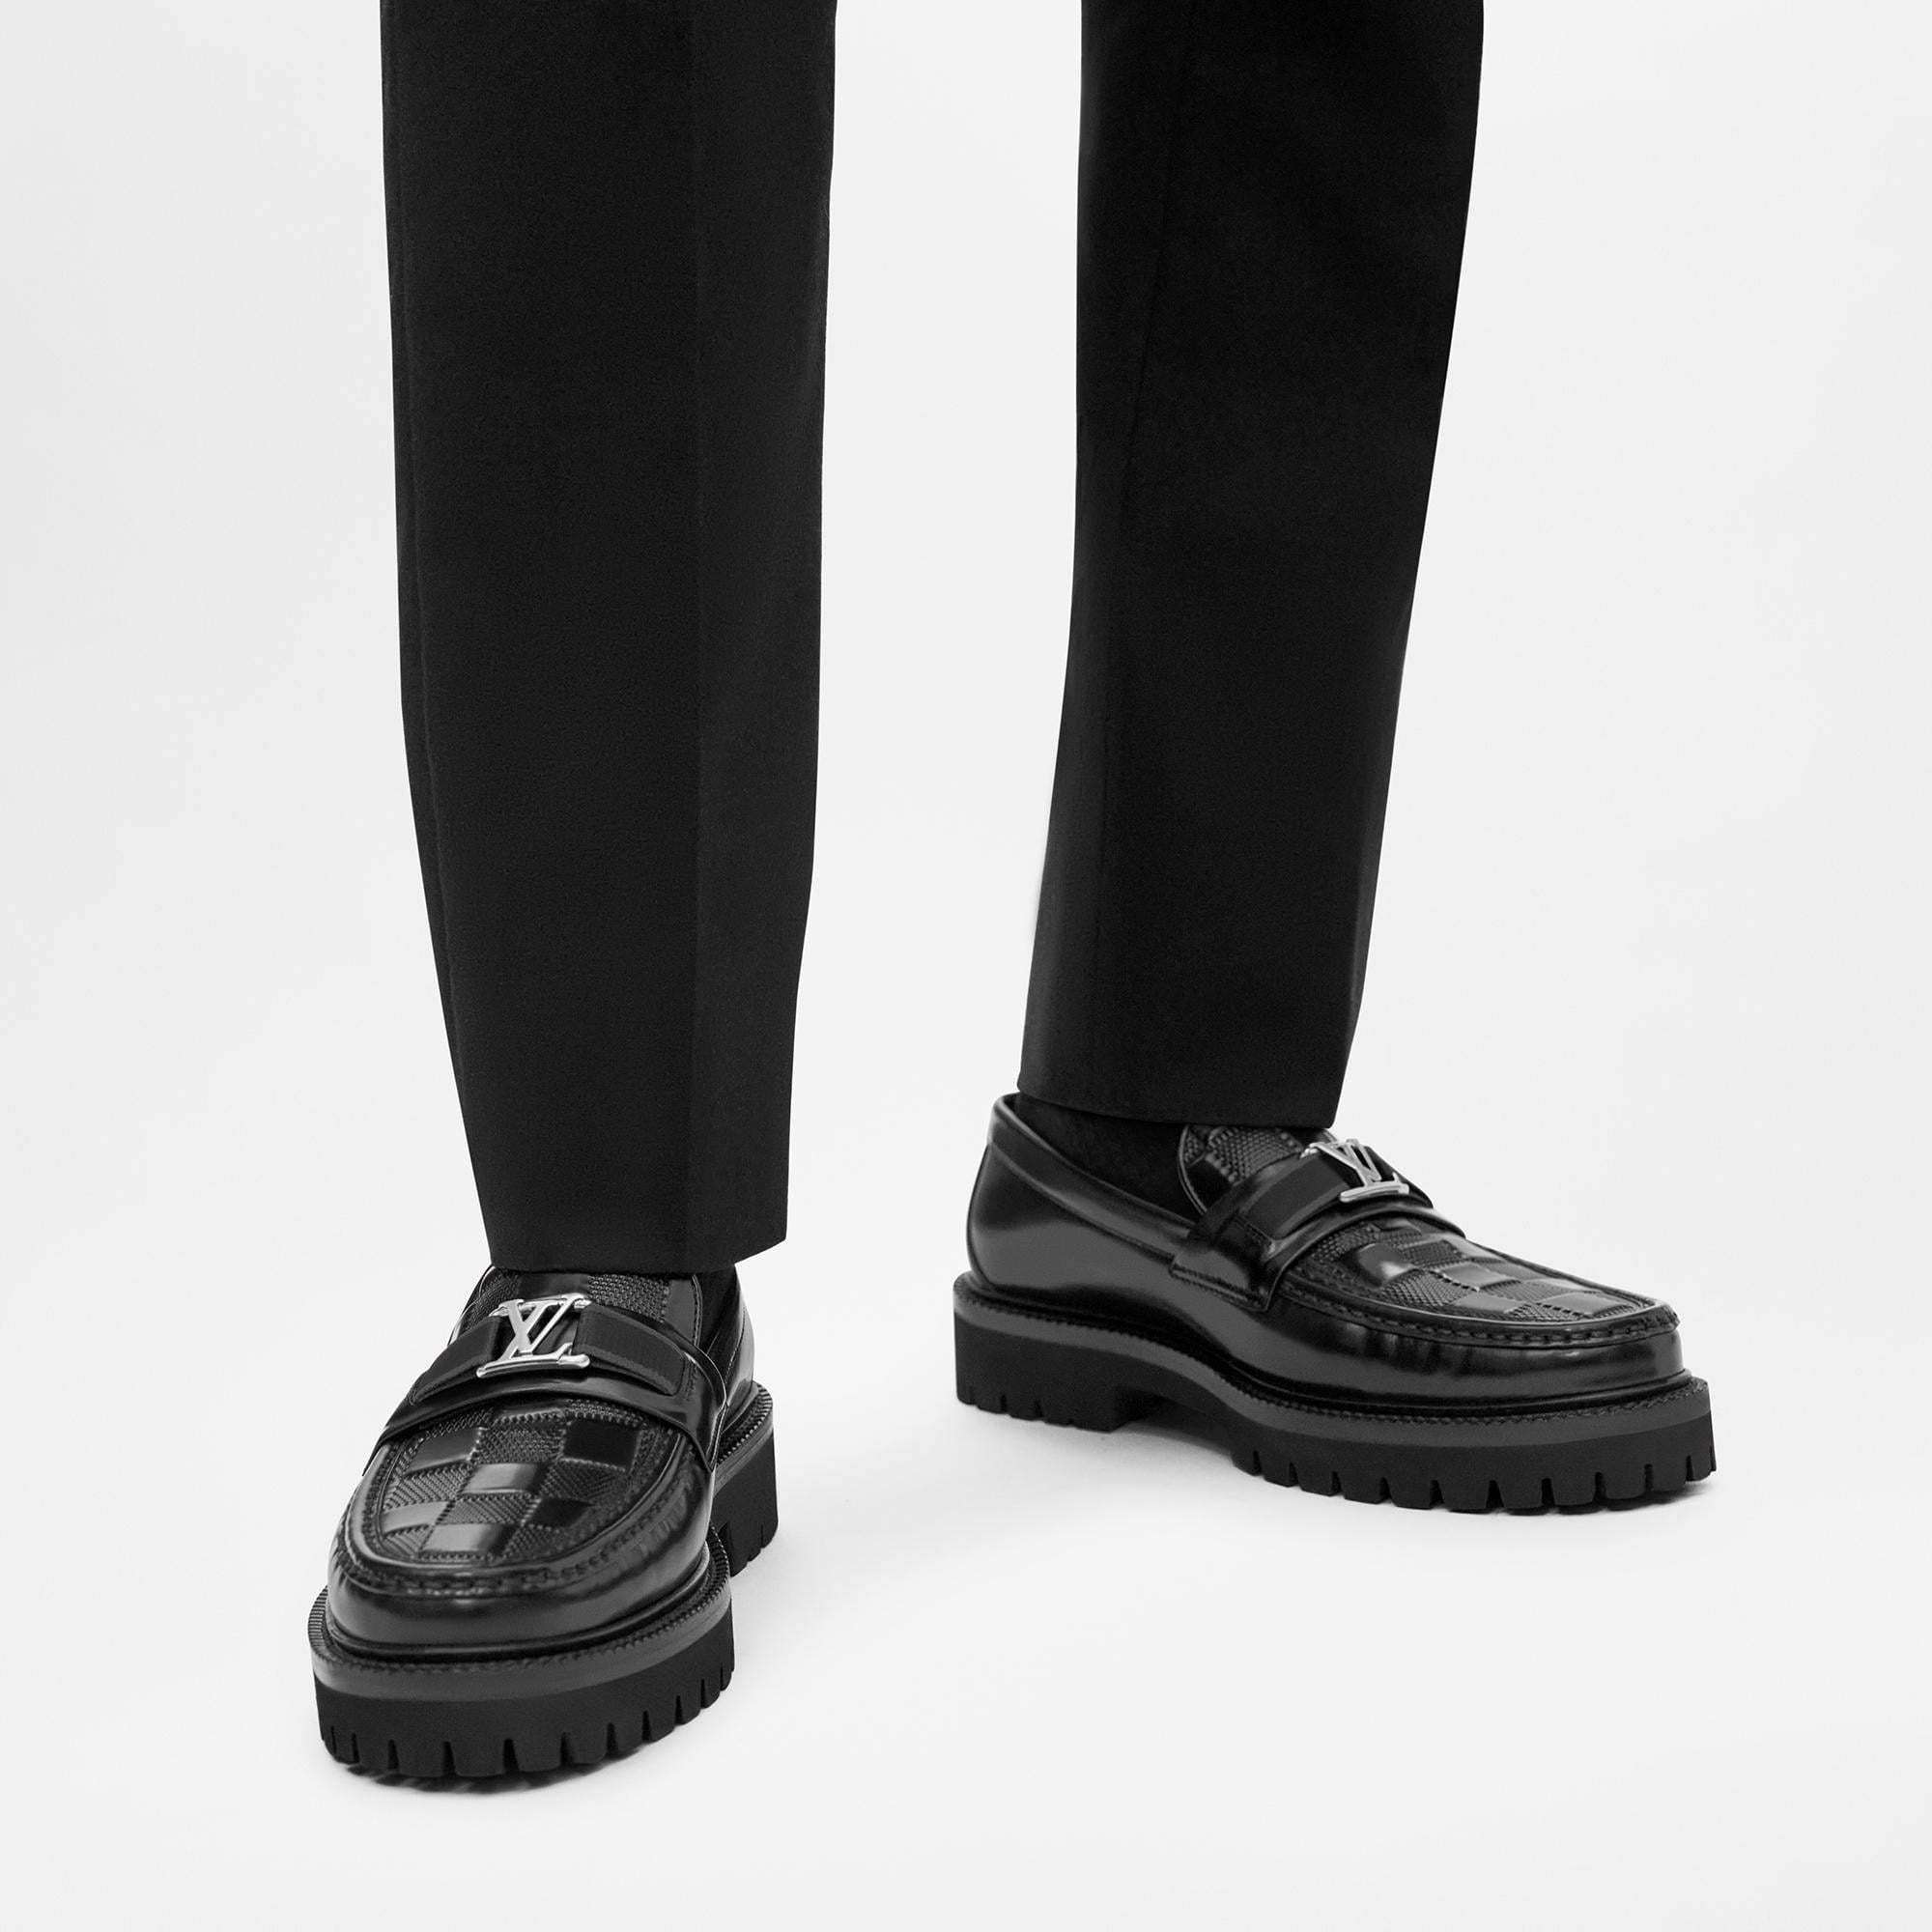 Louis Vuitton Major Loafer BLACK. Size 09.0